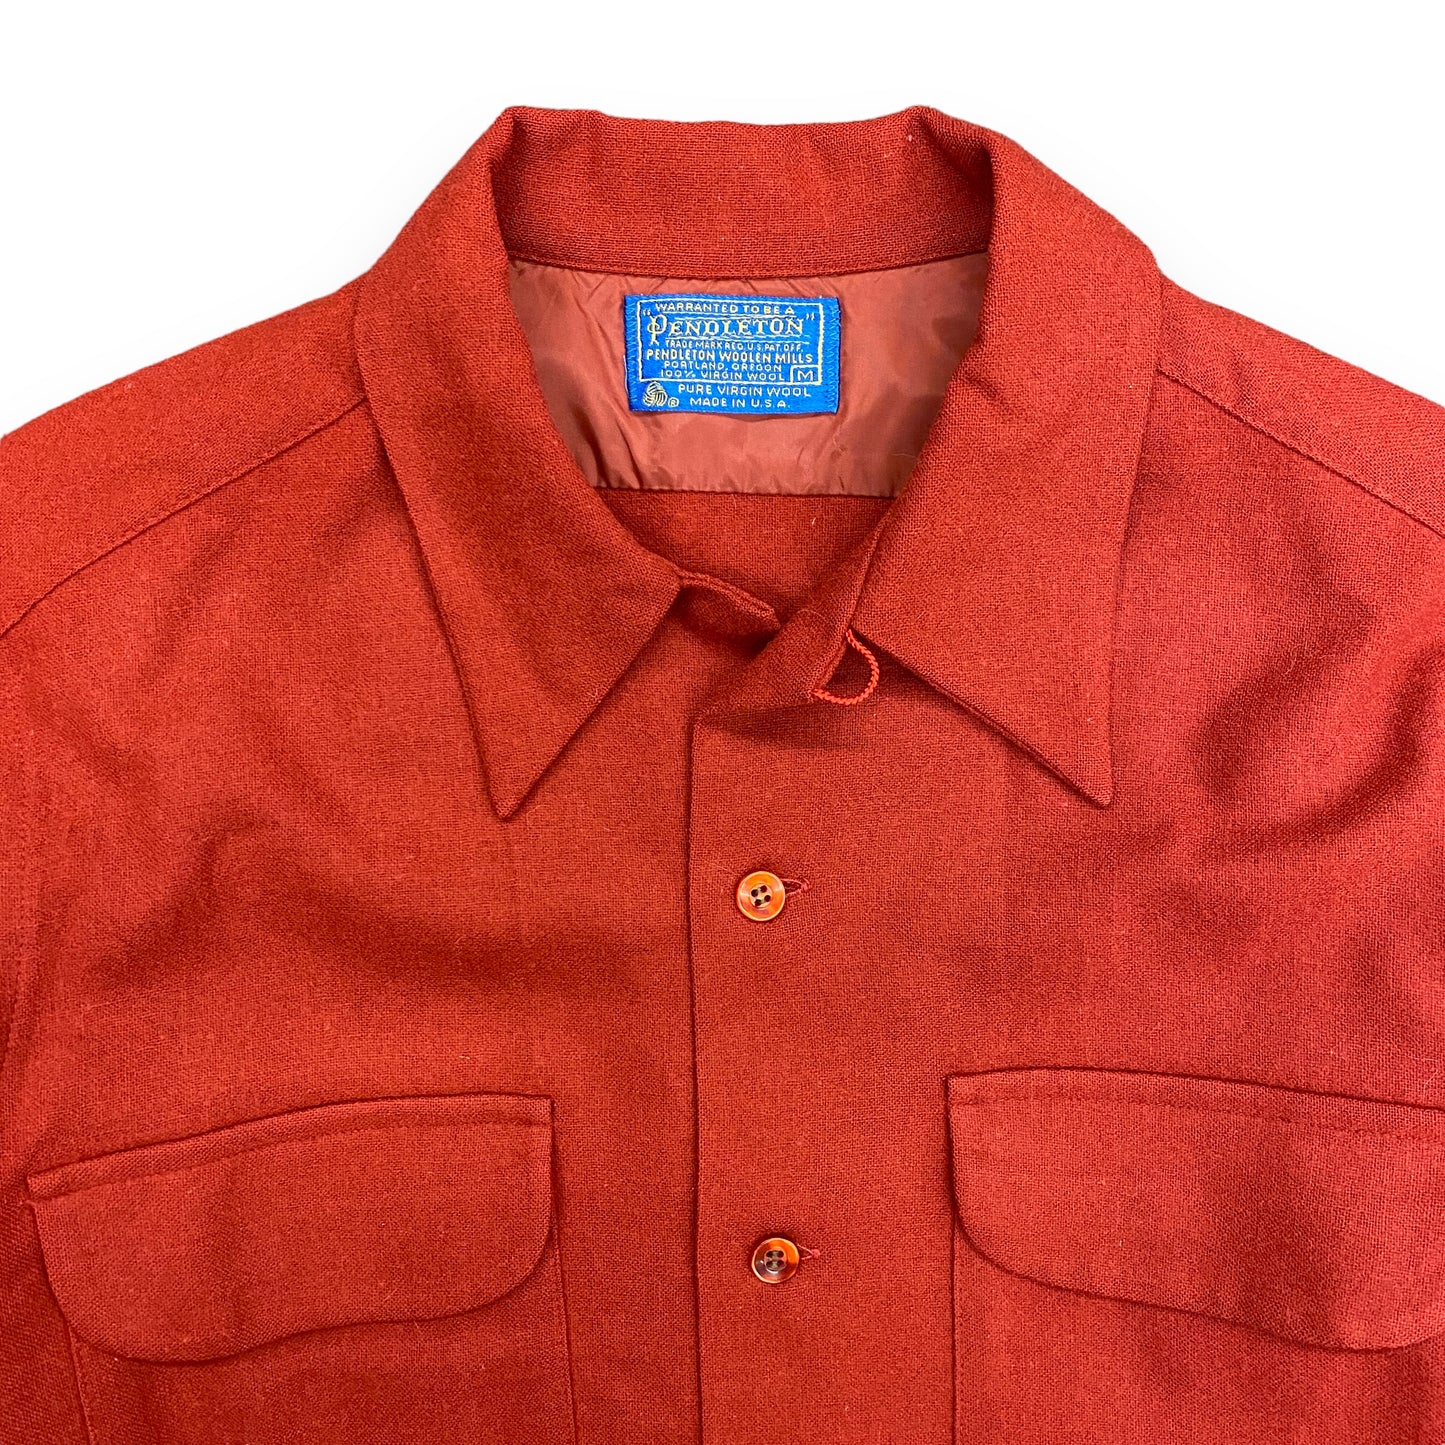 1960s/1970s Pendleton Red Wool Board Shirt - Size Medium